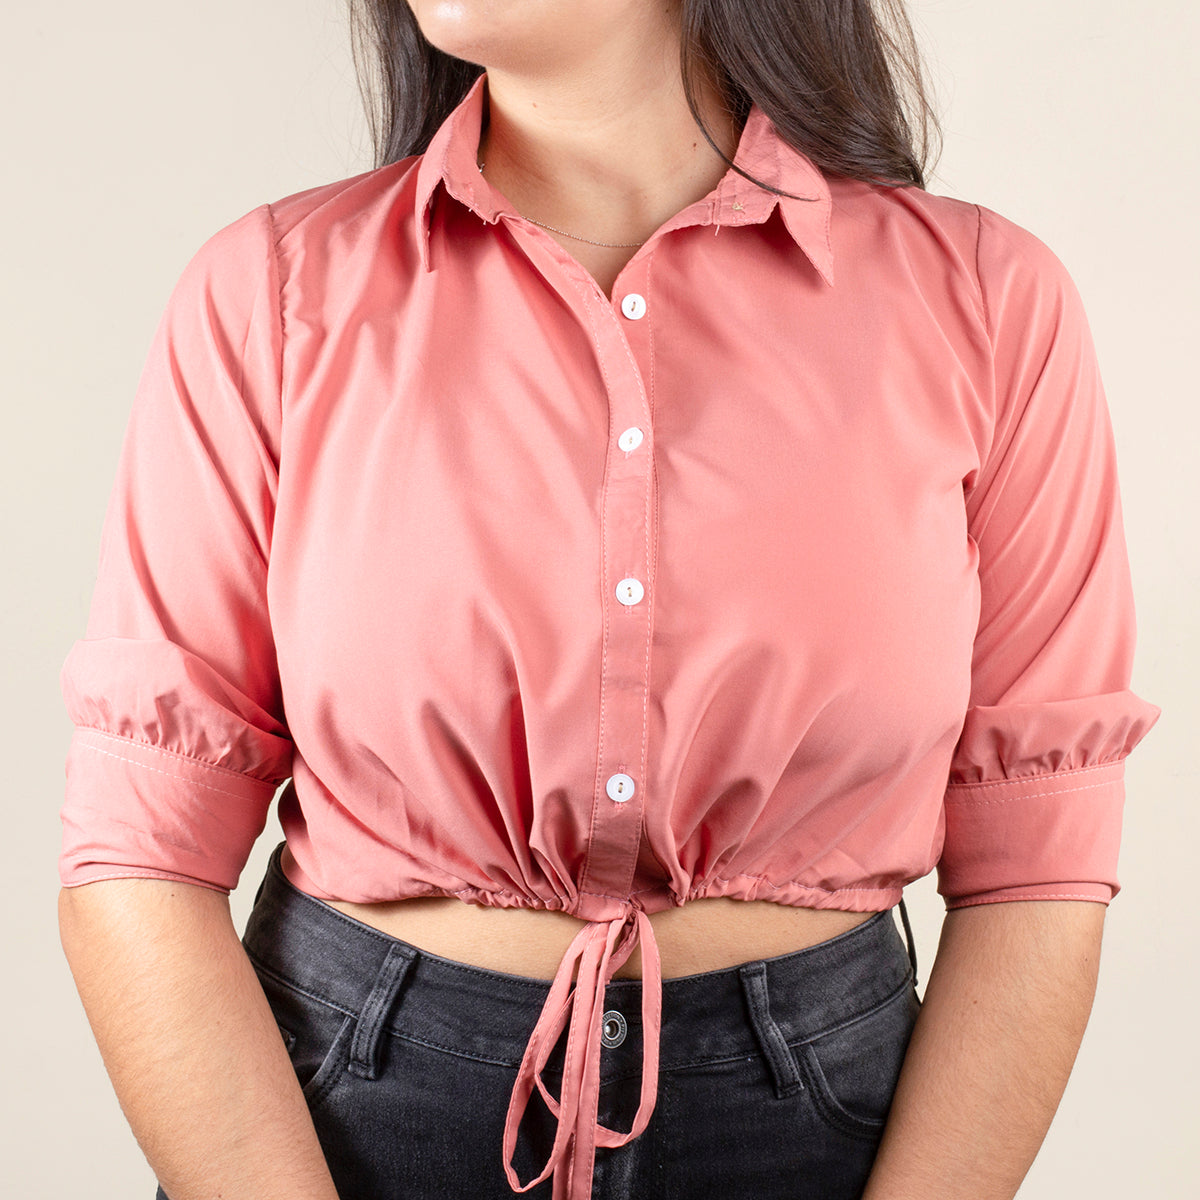 Blusa corta color palo de rosa con moño en abdomen